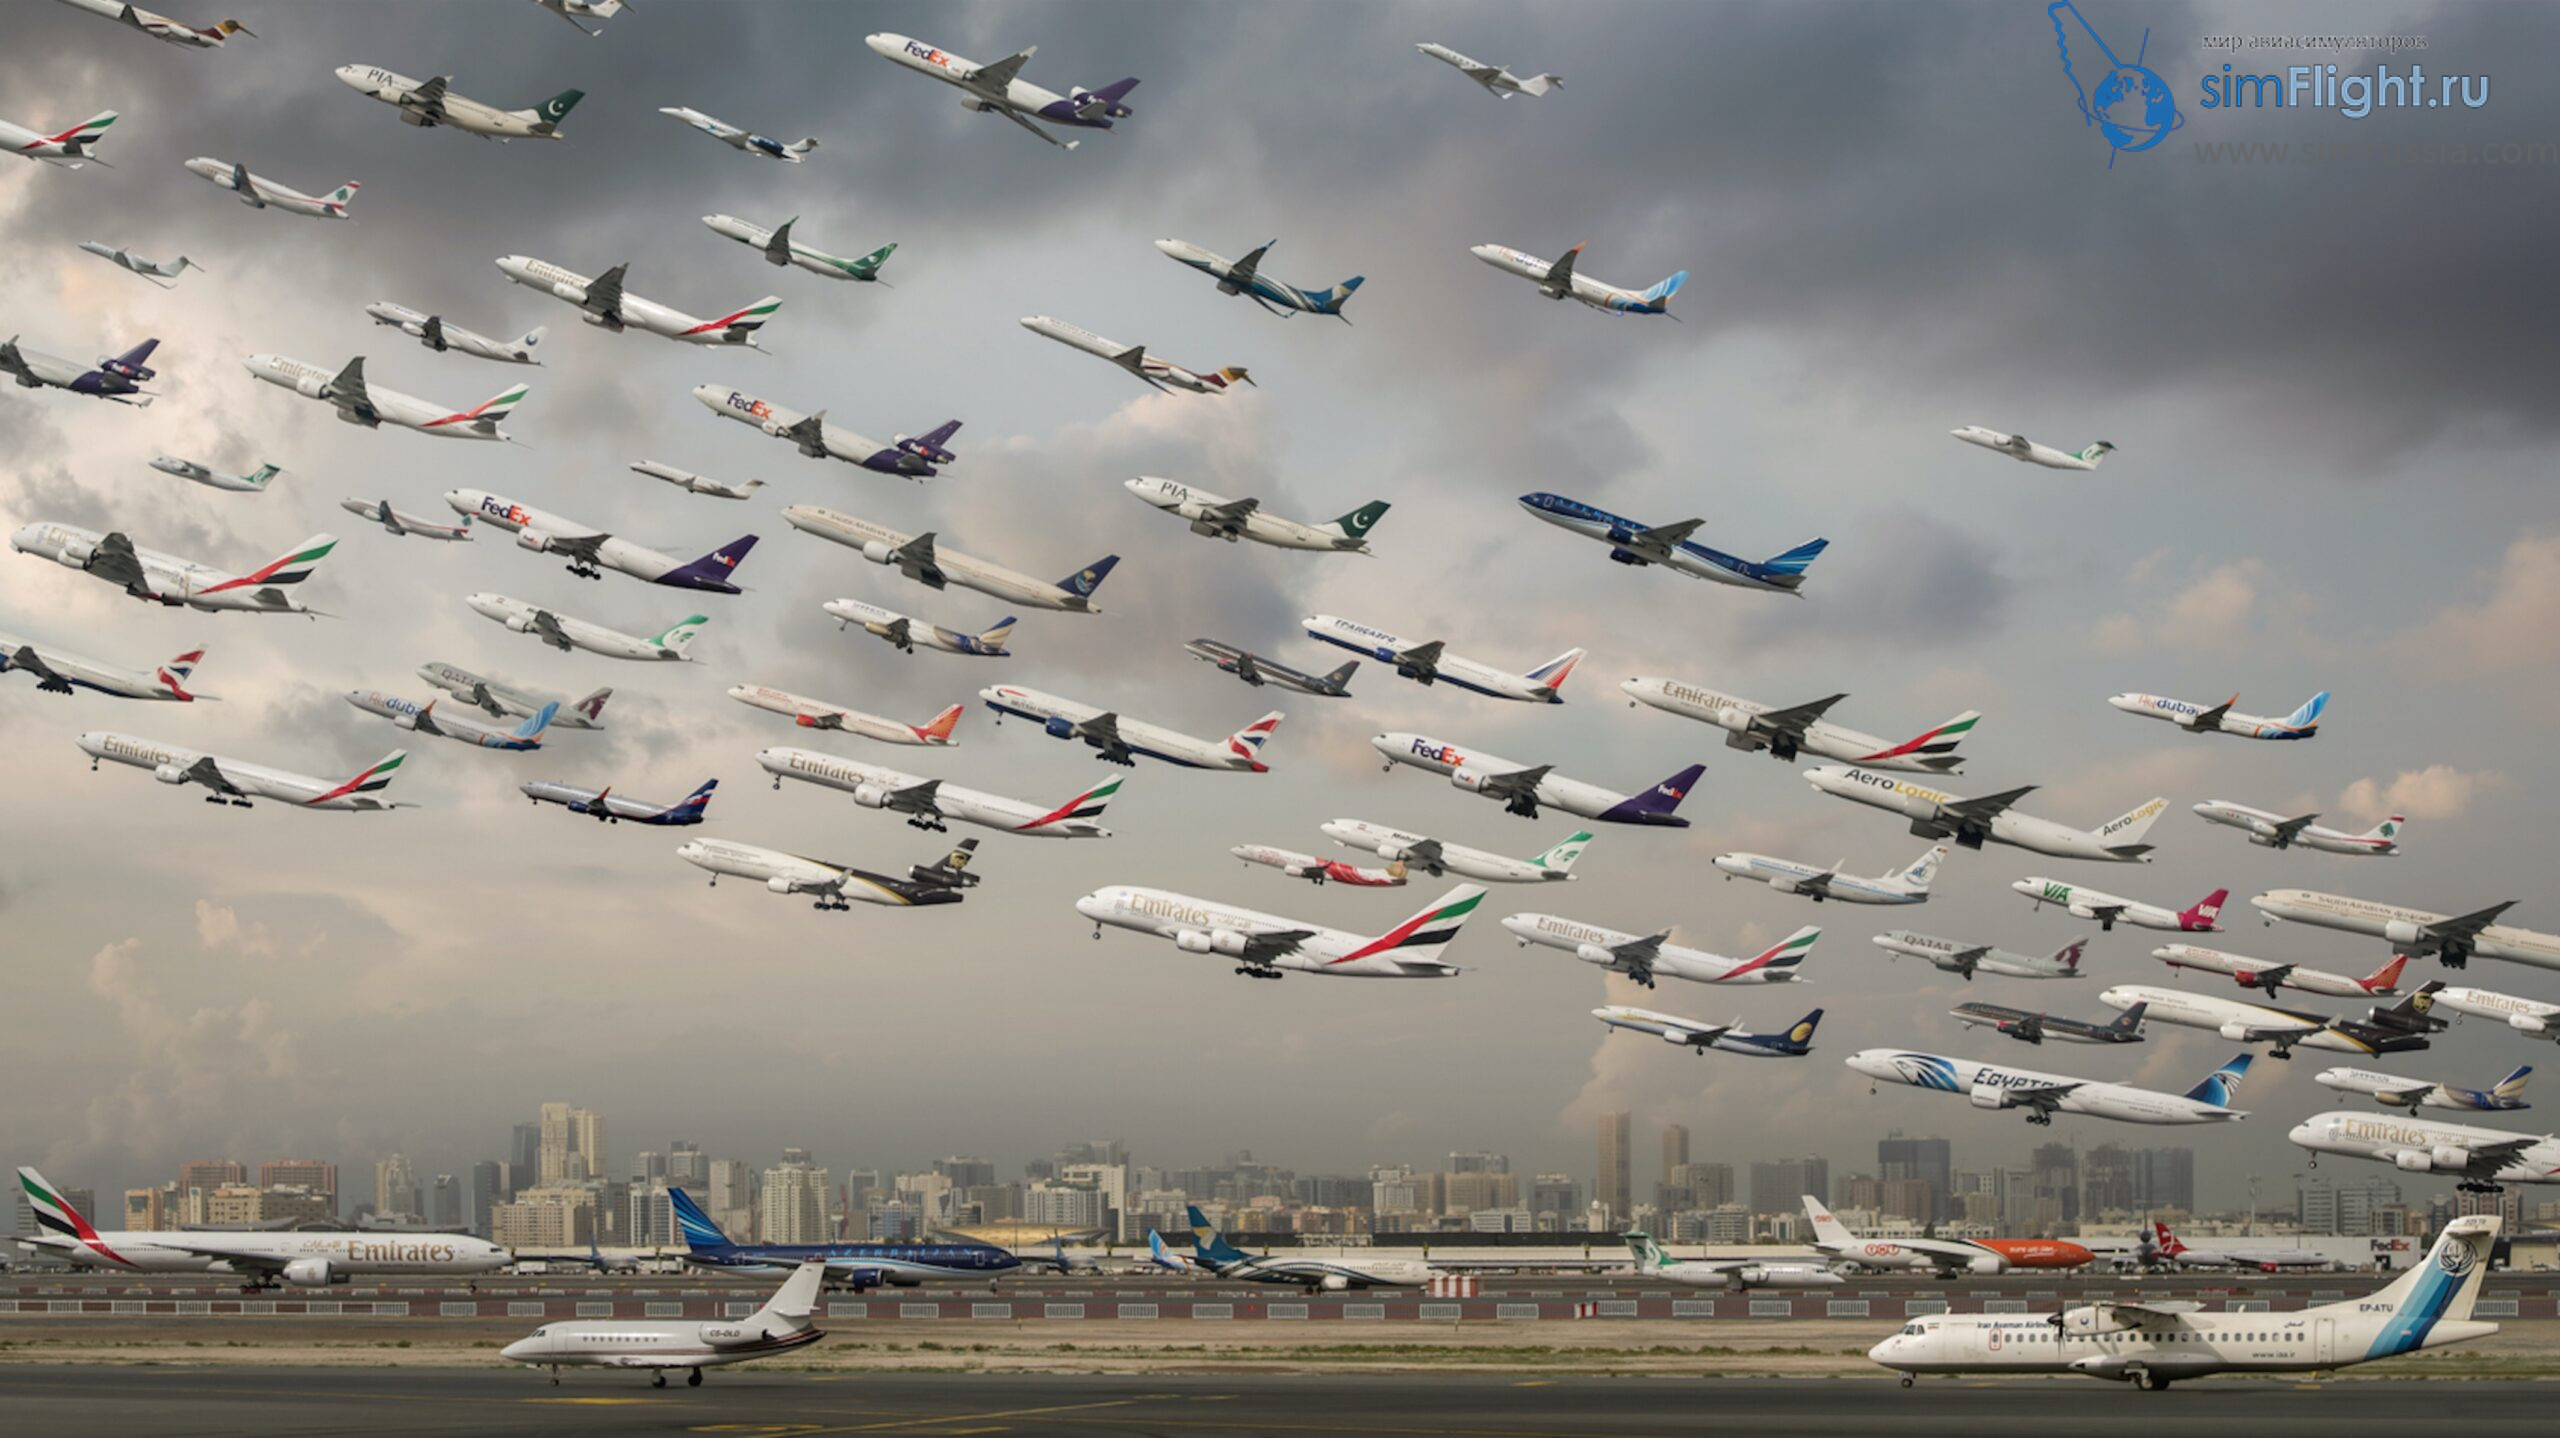 Пригород самолет. Много самолетов в небе. Куча самолетов. Куча самолетов в небе. Много взлетающих самолетов.